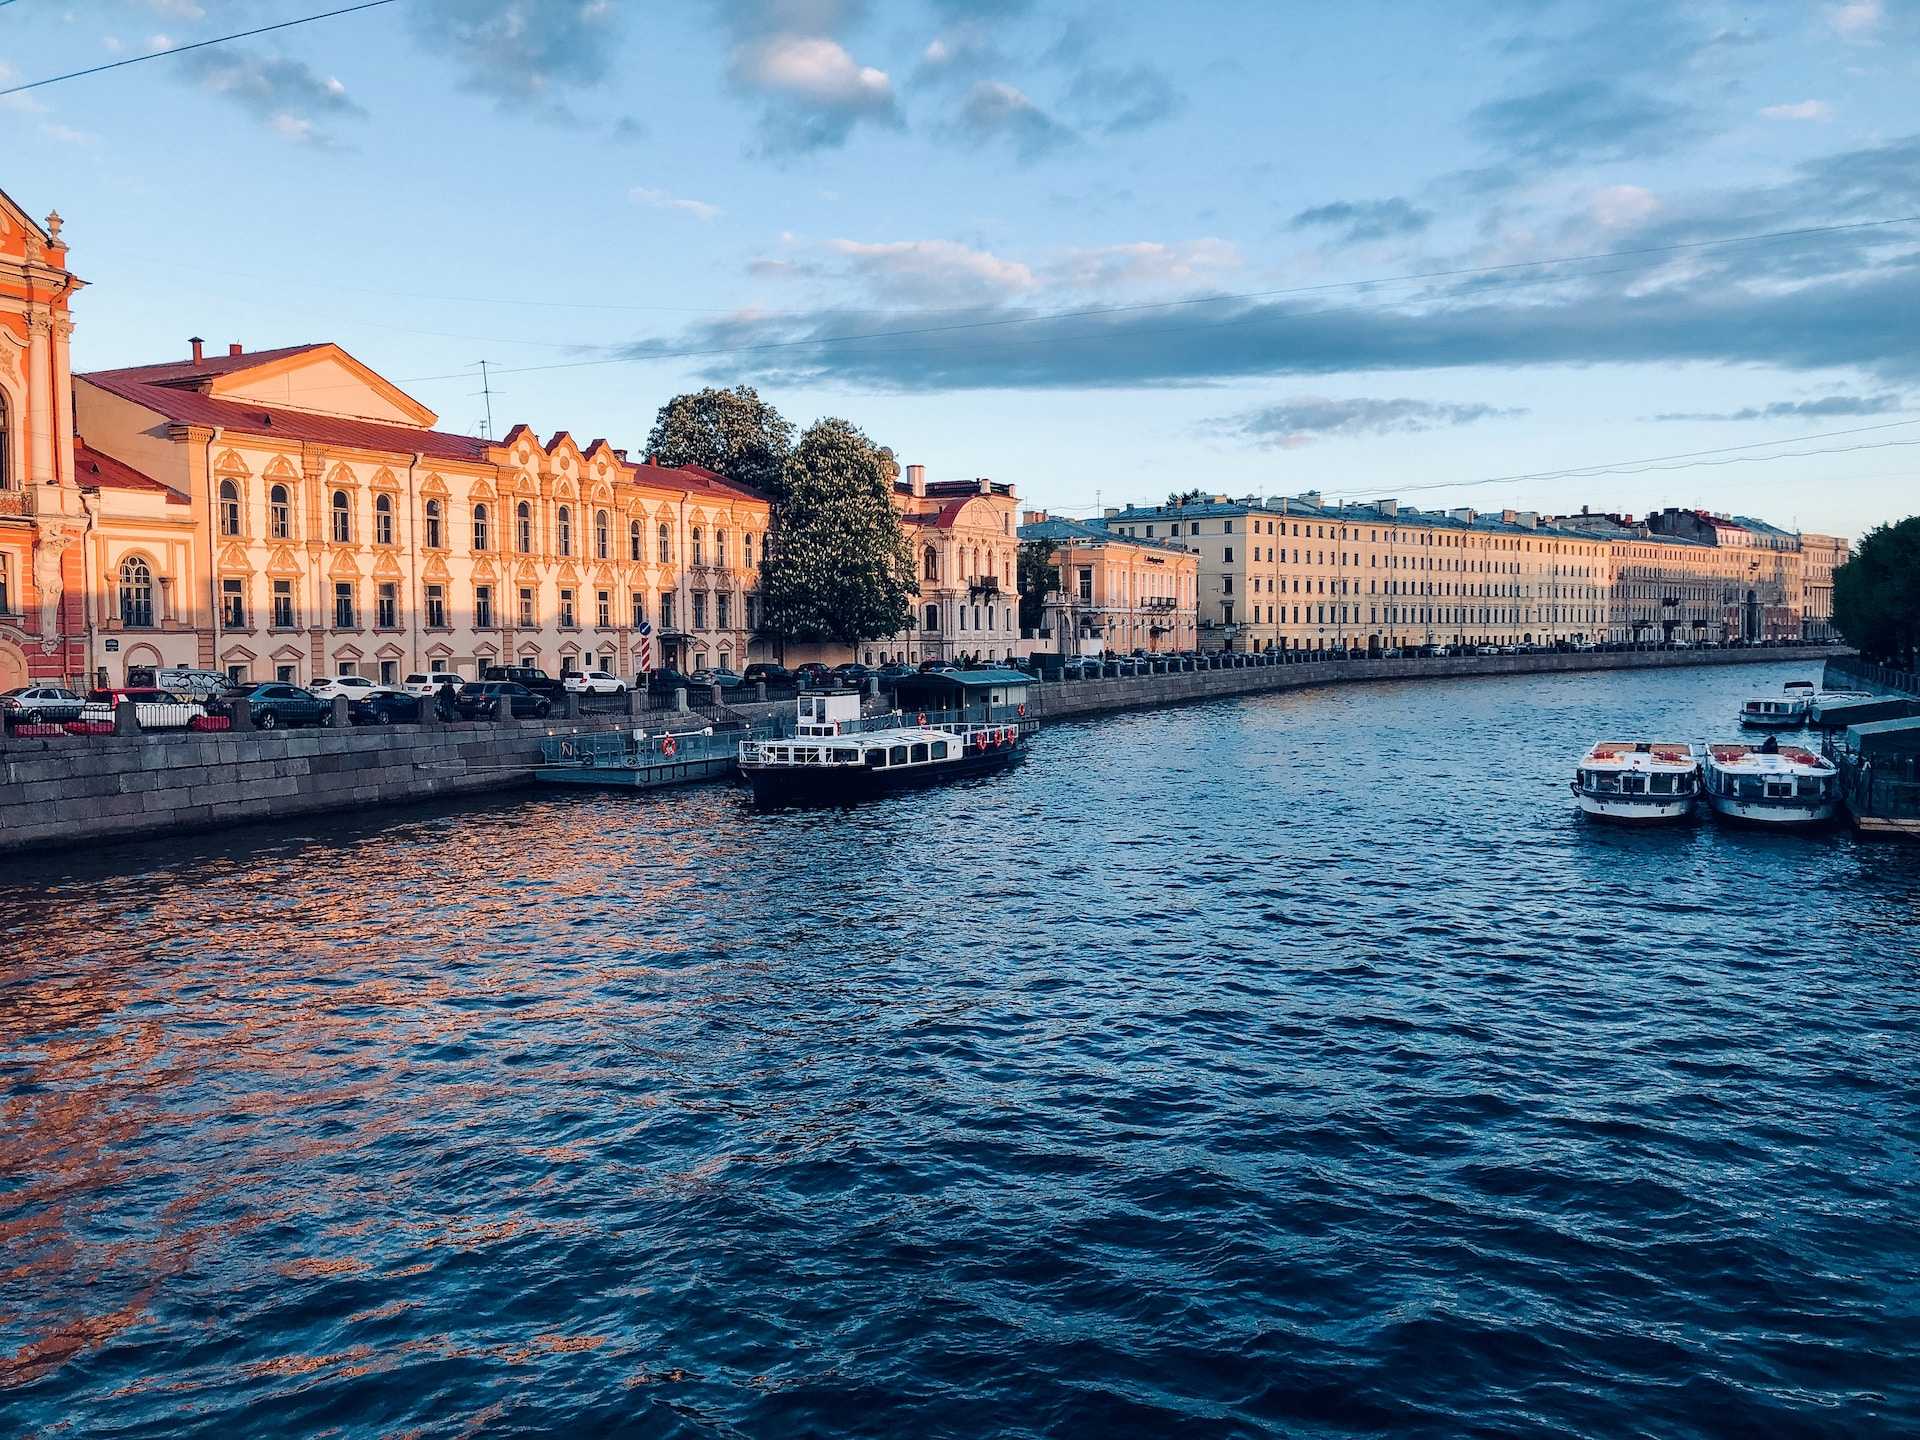 Река Нева в Санкт-Петербурге. Фото взято с:&nbsp;https://unsplash.com/photos/two-white-motorboats-Ba5pytyJW4Q